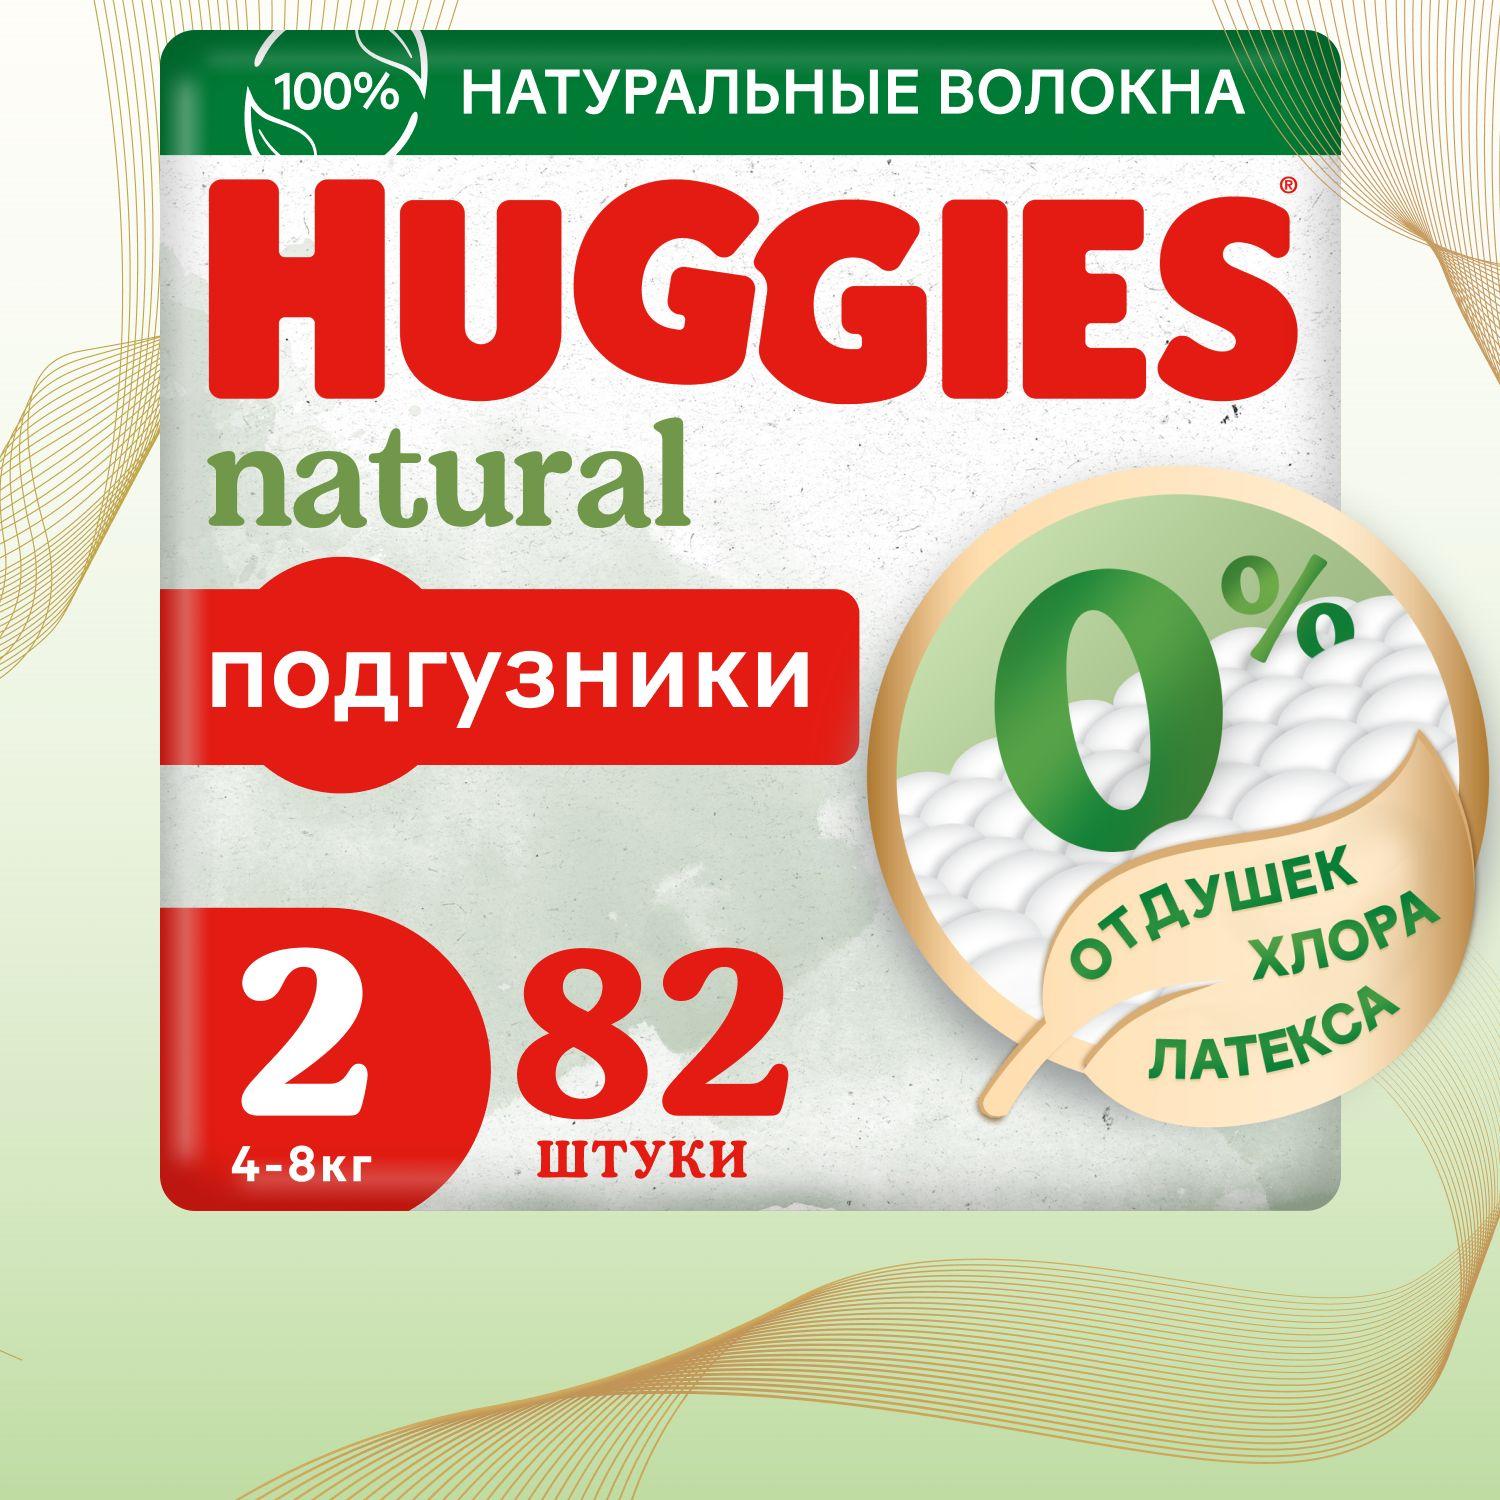 Подгузники для новорожденных Huggies Natural 2 S размер, 4-8 кг, 82 шт